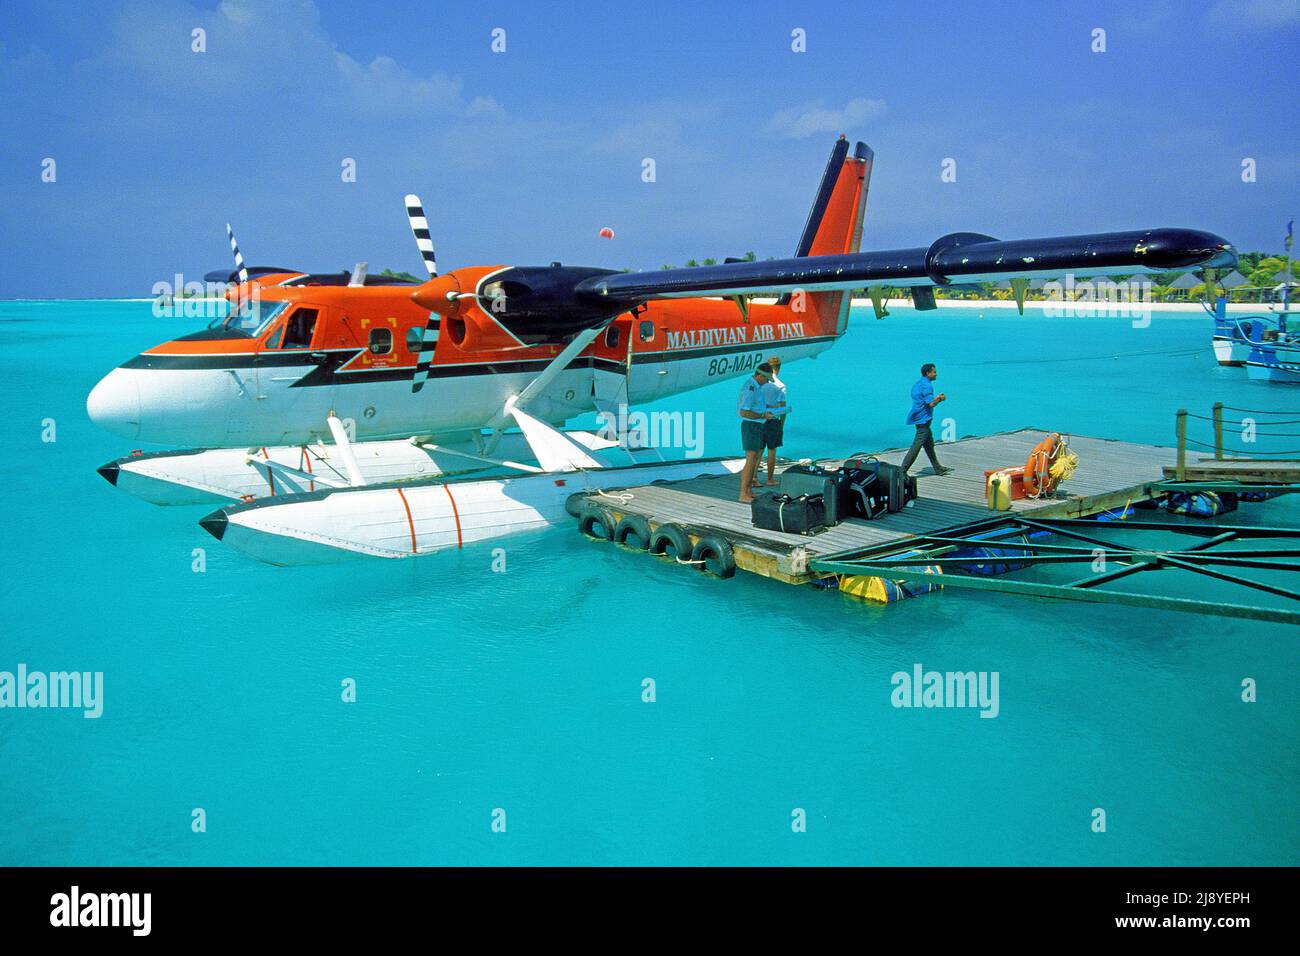 Maledivische Air Taxi Flugzeug, gemeinsamer Transfer vom Flughafen zu den Inselresorts, Landung in der Lagune der Insel, Kuredu, Laviyani Atoll, Maldive Stockfoto